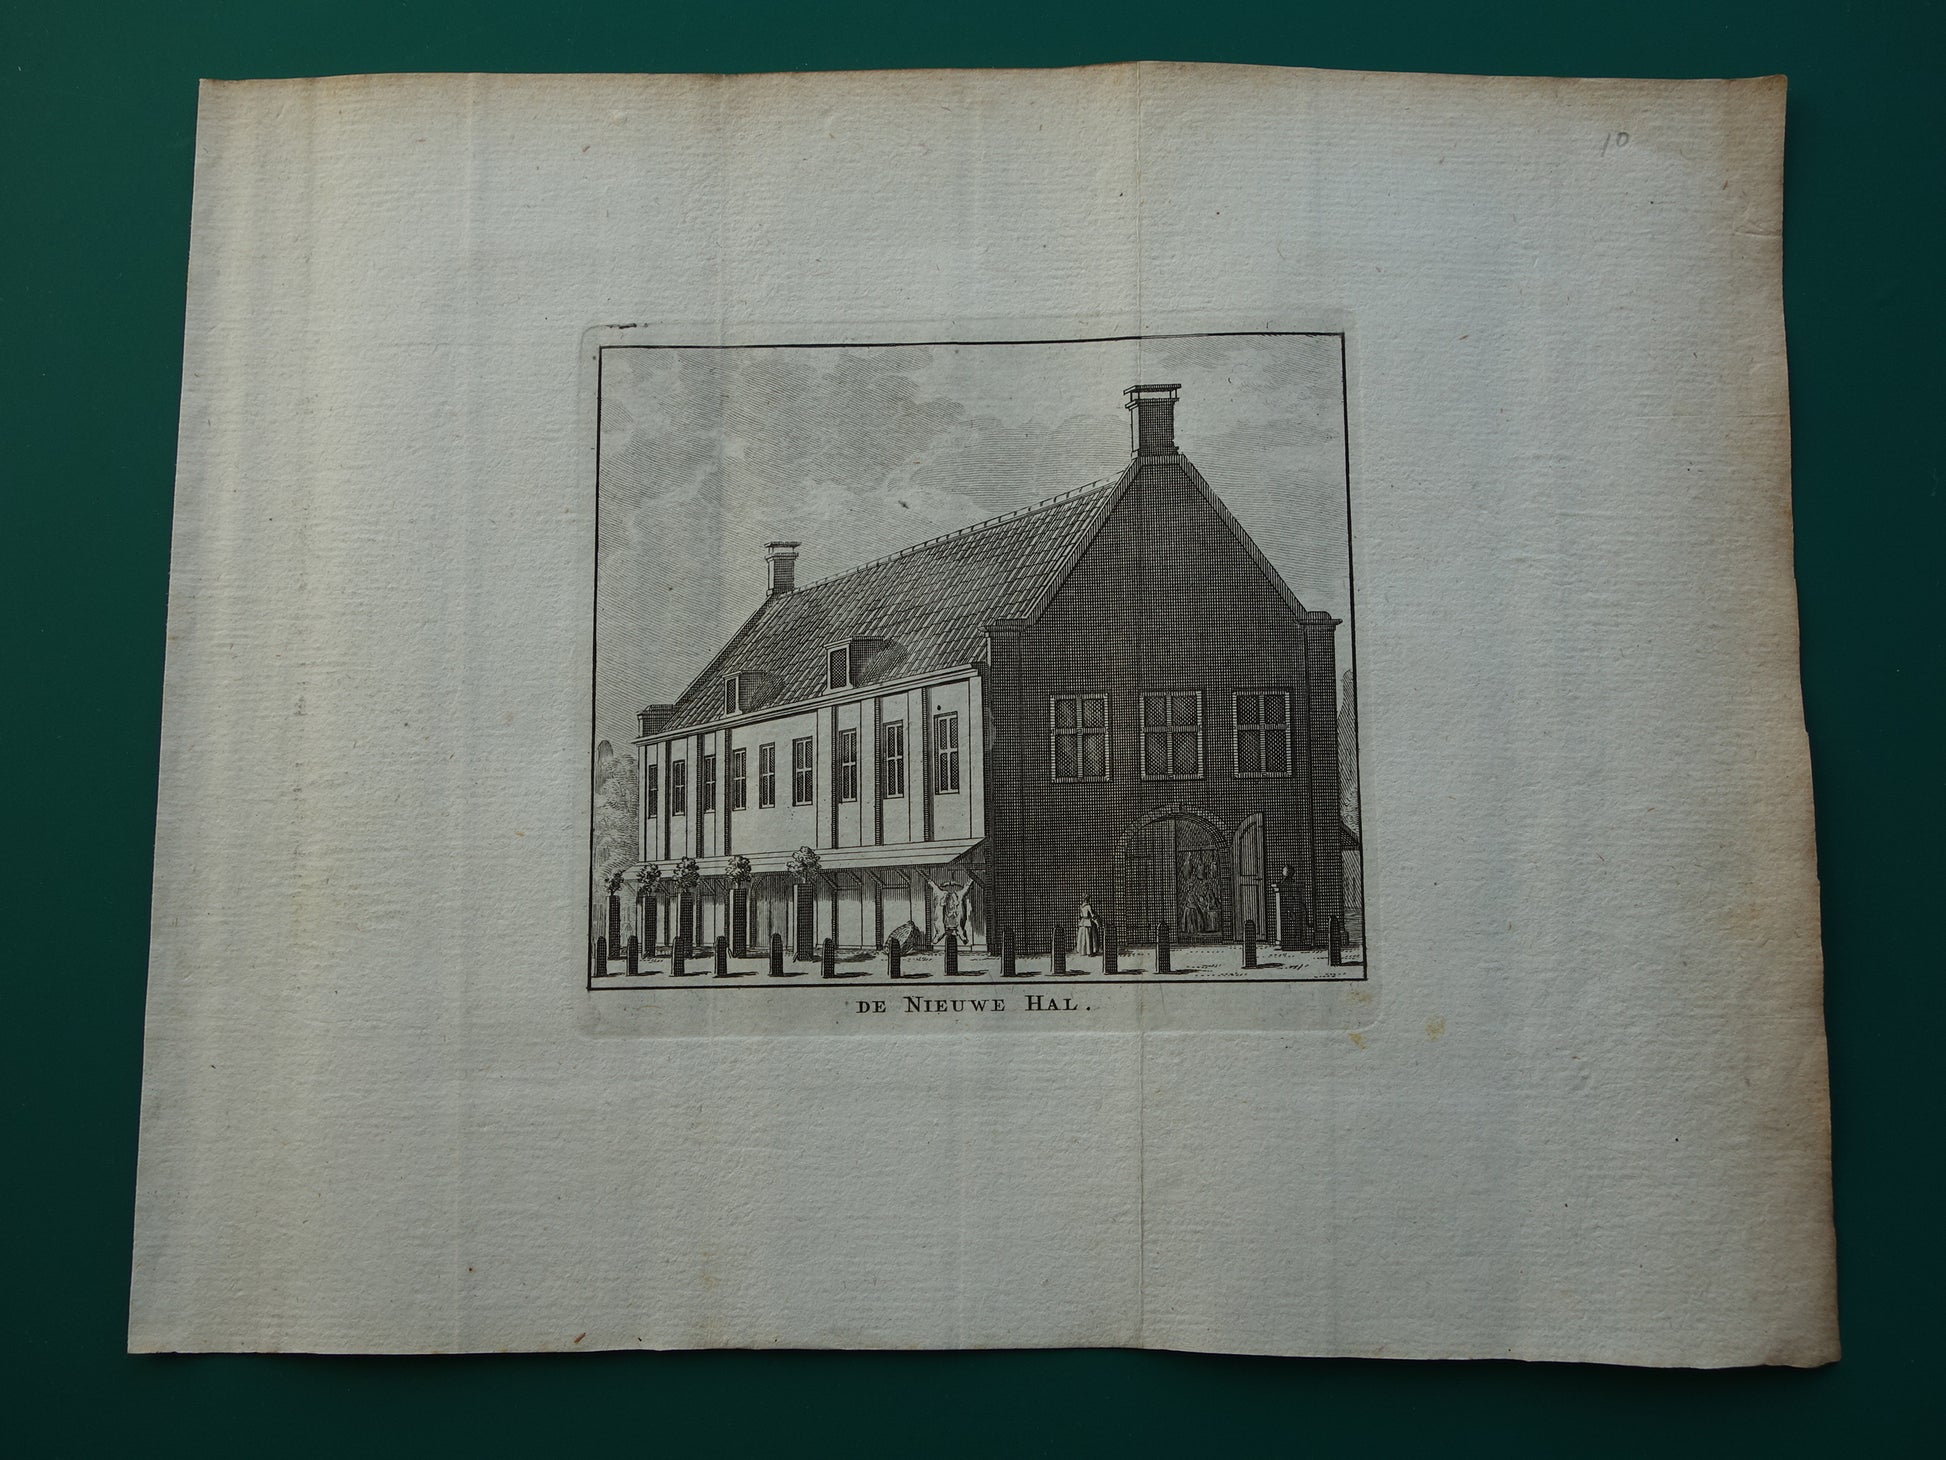 Oude prent van de Nieuwe Hal Rembrandtplein in Amsterdam Originele antieke gravure Vleeshal Botermarkt Historisch stadsgezicht Vintage Print